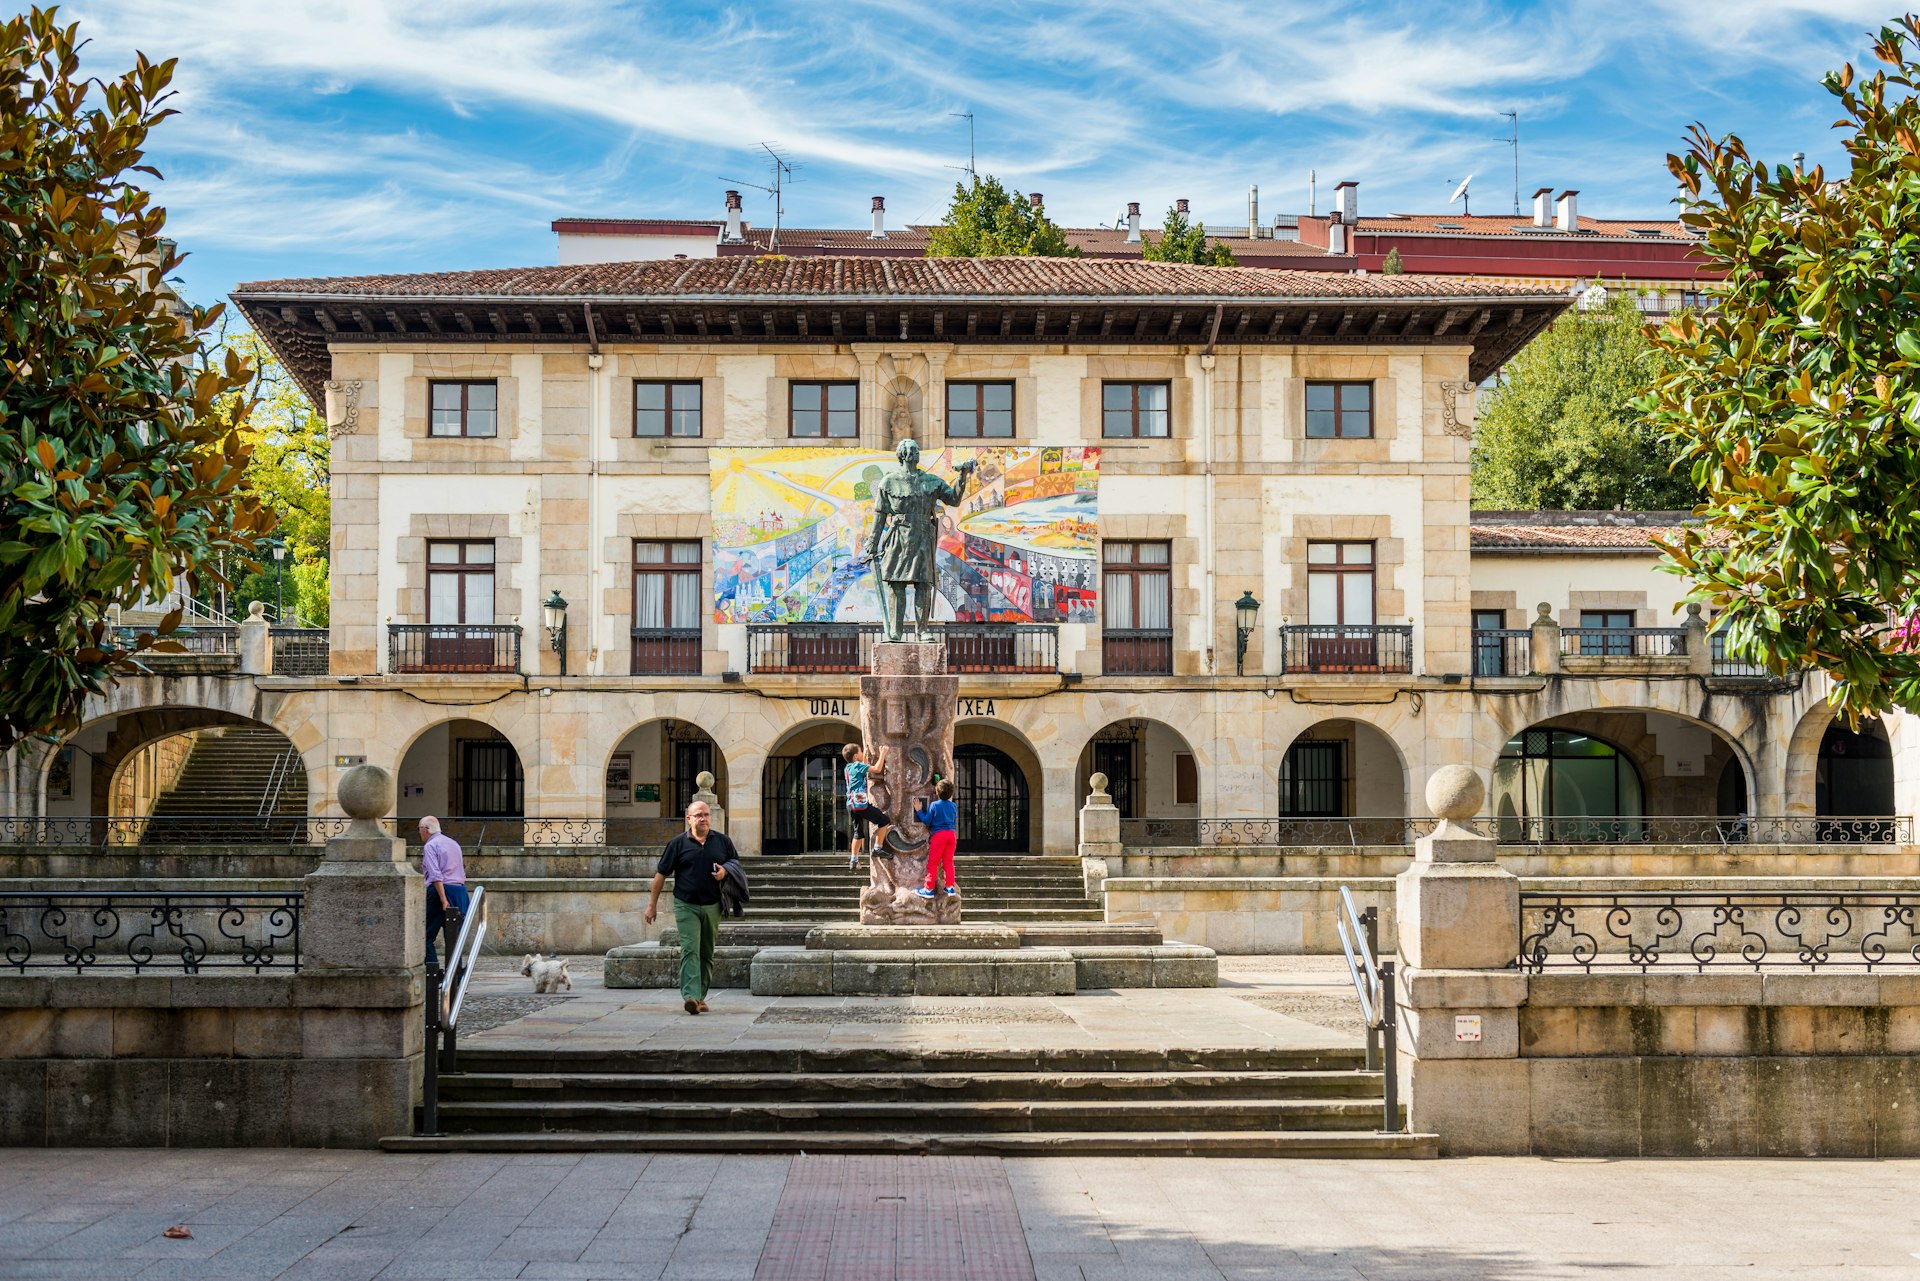  Foru Plaza in Gernika, Spain. 